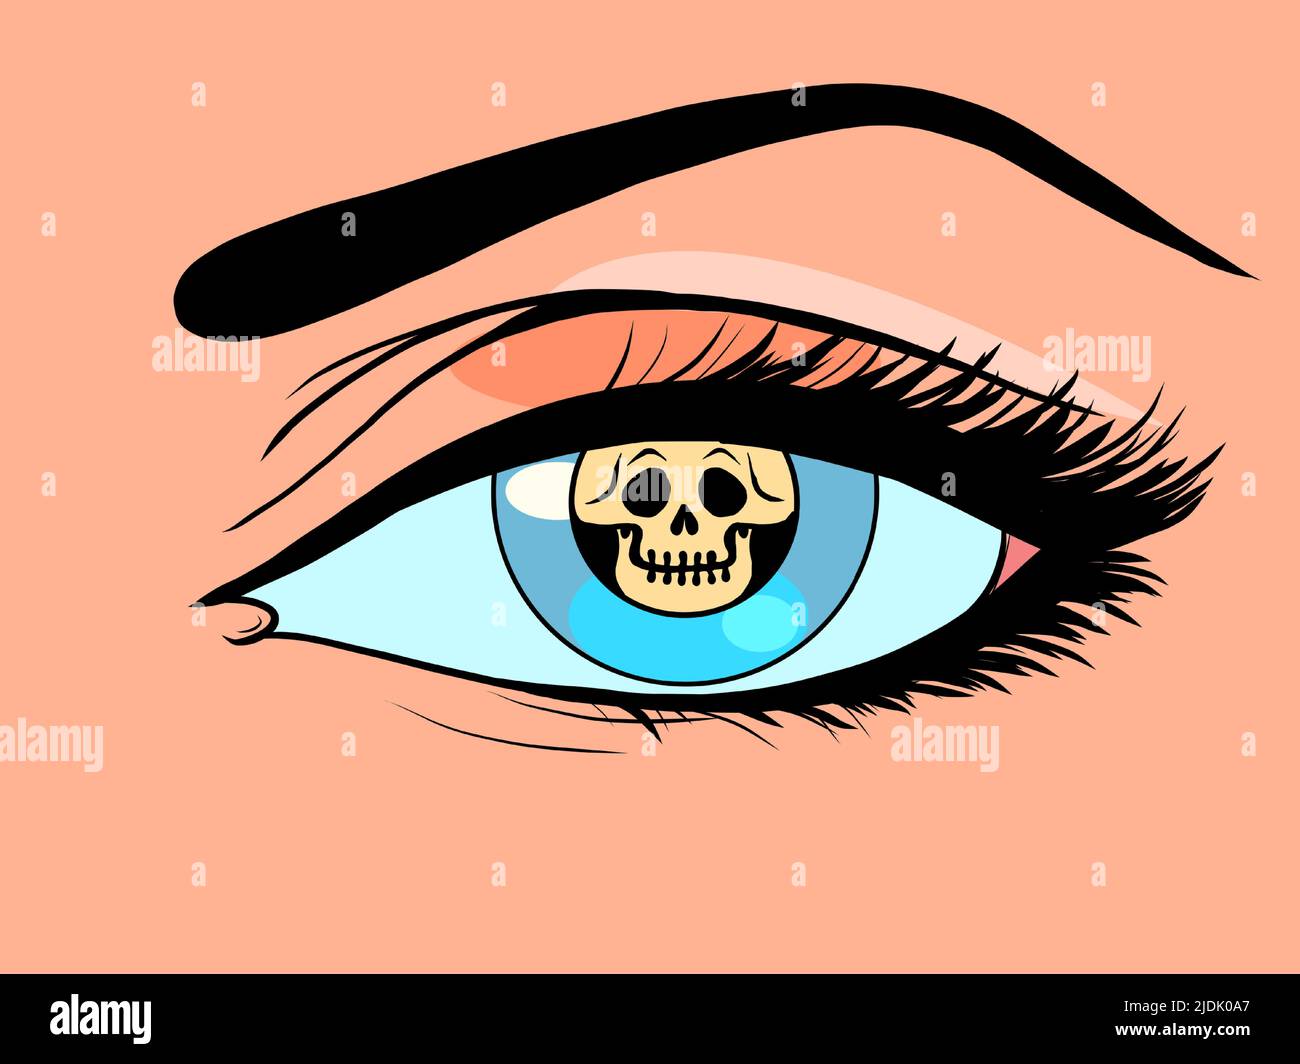 icono peligro mortal, un símbolo de la guerra de radiación envenenamiento químico en lugar de un pupila en un ojo de mujer. Ilustración de dibujo de estilo cómic Ilustración del Vector